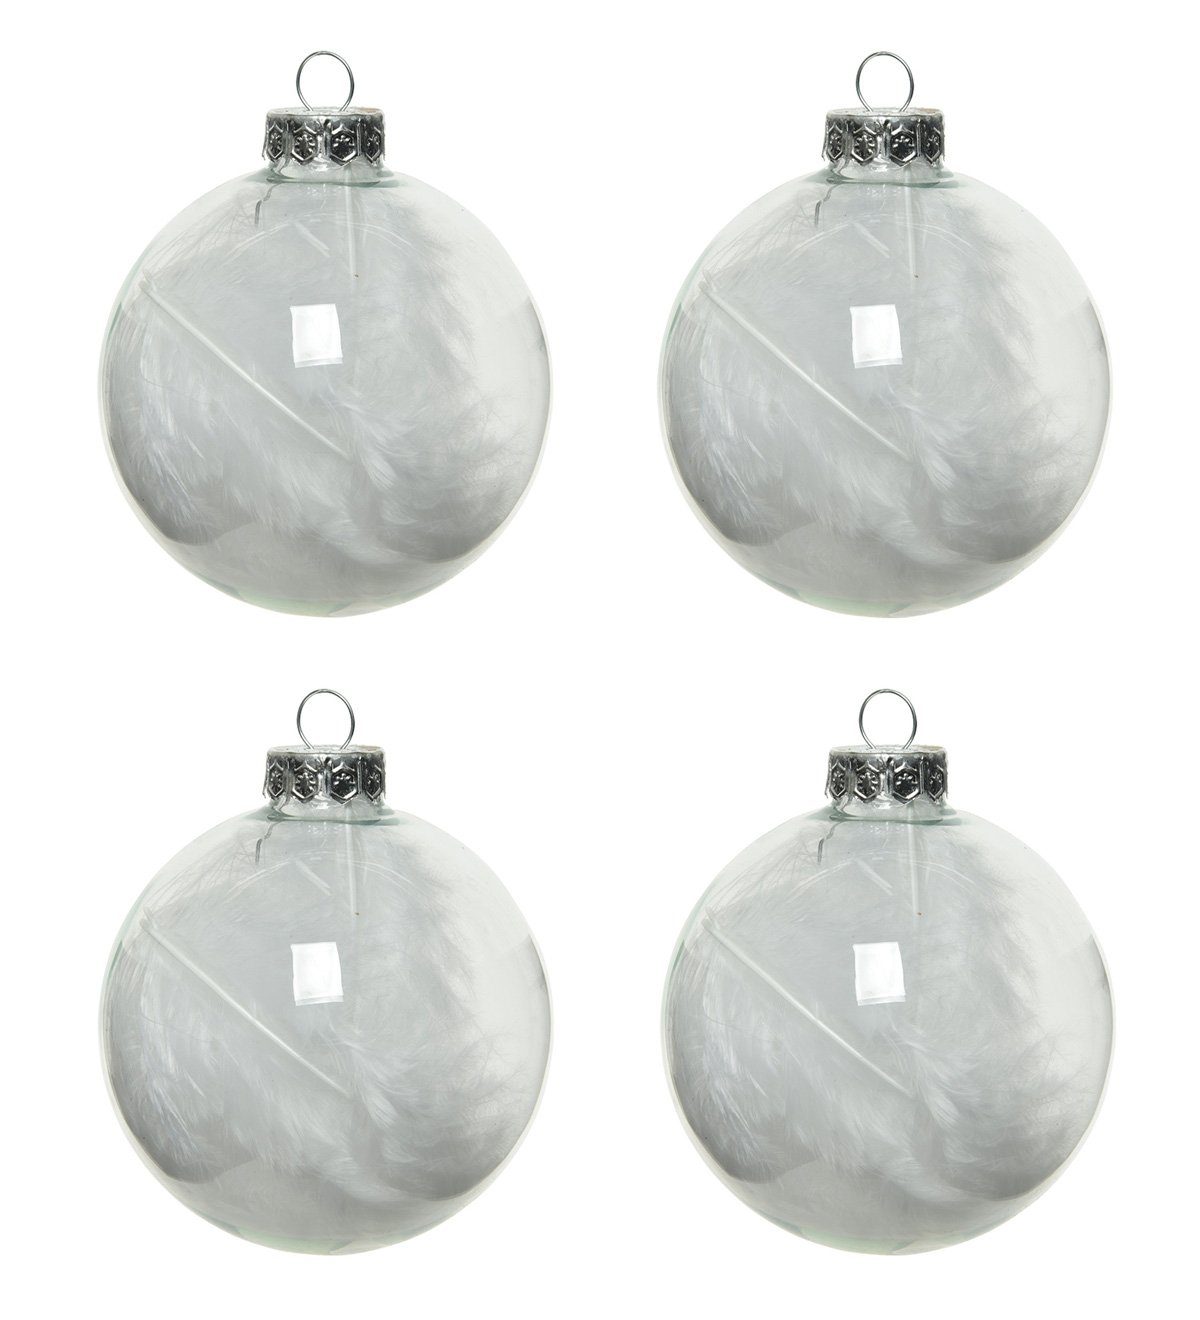 Decoris season decorations Christbaumschmuck, Weihnachtskugeln Glas mit Federn gefüllt 7cm klar / weiß, 4er Set